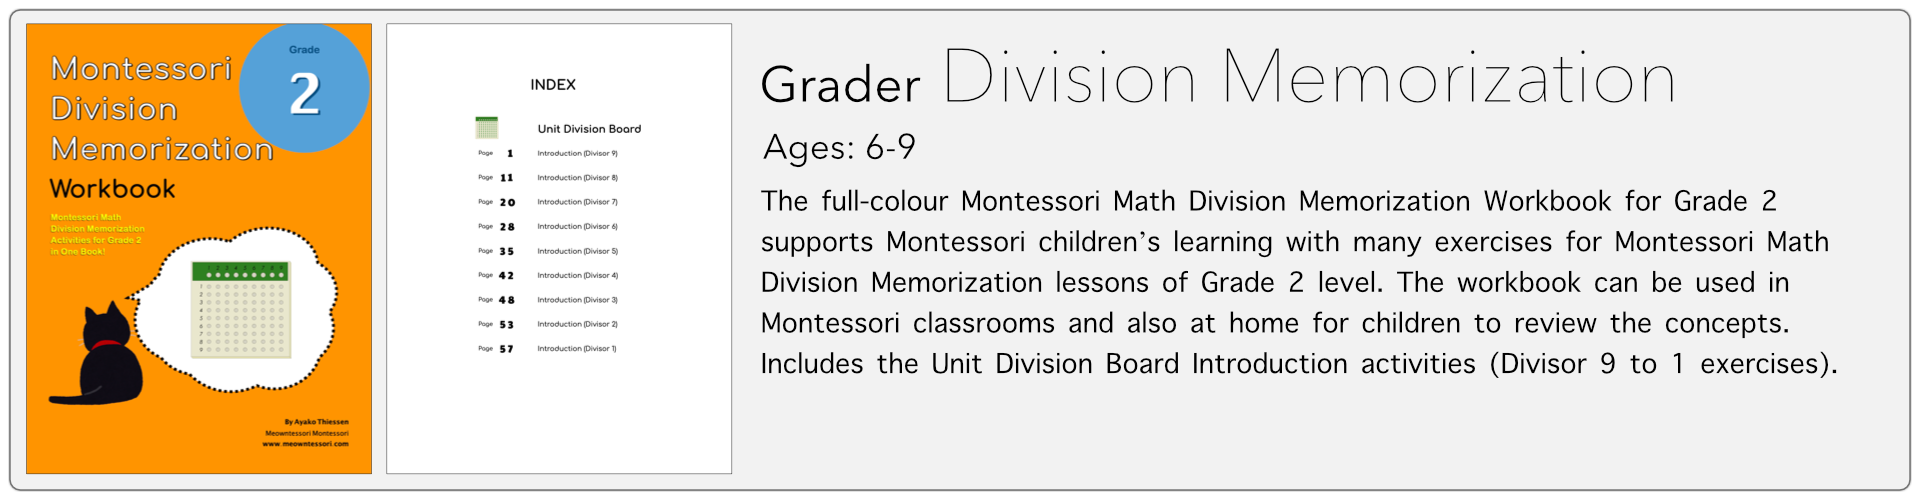 grade2 division memorization